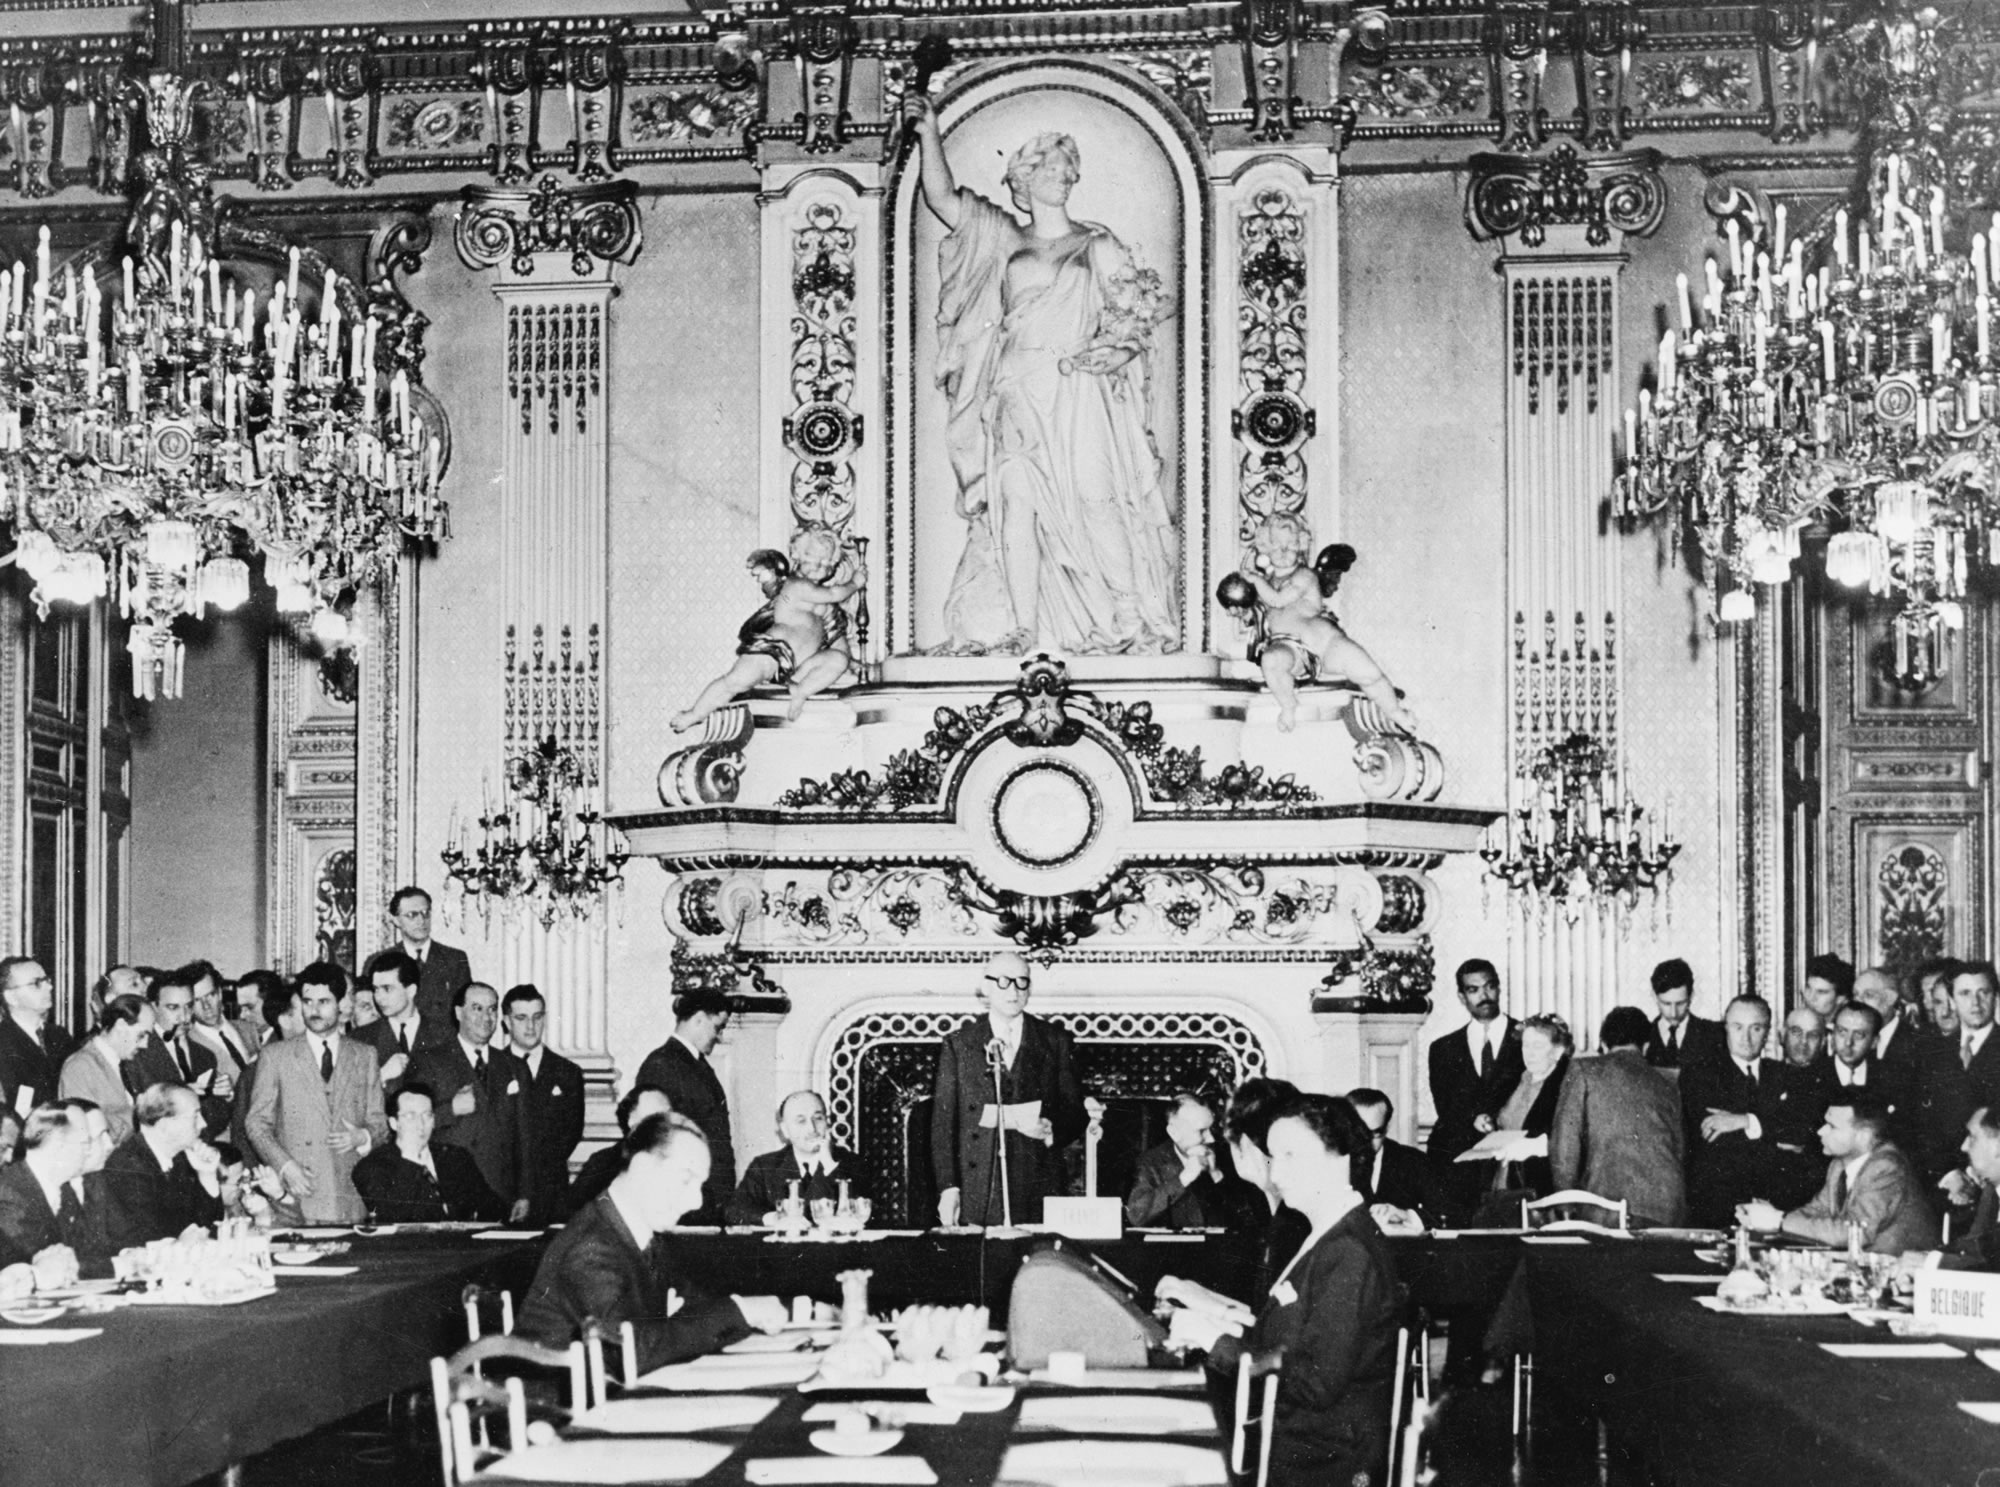 Šumano deklaracija 1950 m. gegužės 9 d. Užsienio reikalų ministerijos laikrodžių salėje Quai d’Orsay Paryžiuje: Prancūzijos užsienio reikalų ministras Roberas Šumanas pasiūlo sujungti Europos anglių ir plieno pramones į Europos anglių ir plieno bendriją. Taip karas tarp dalyvaujančių valstybių taptų ne tik negalimas, bet ir materialiniu požiūriu neįmanomas.